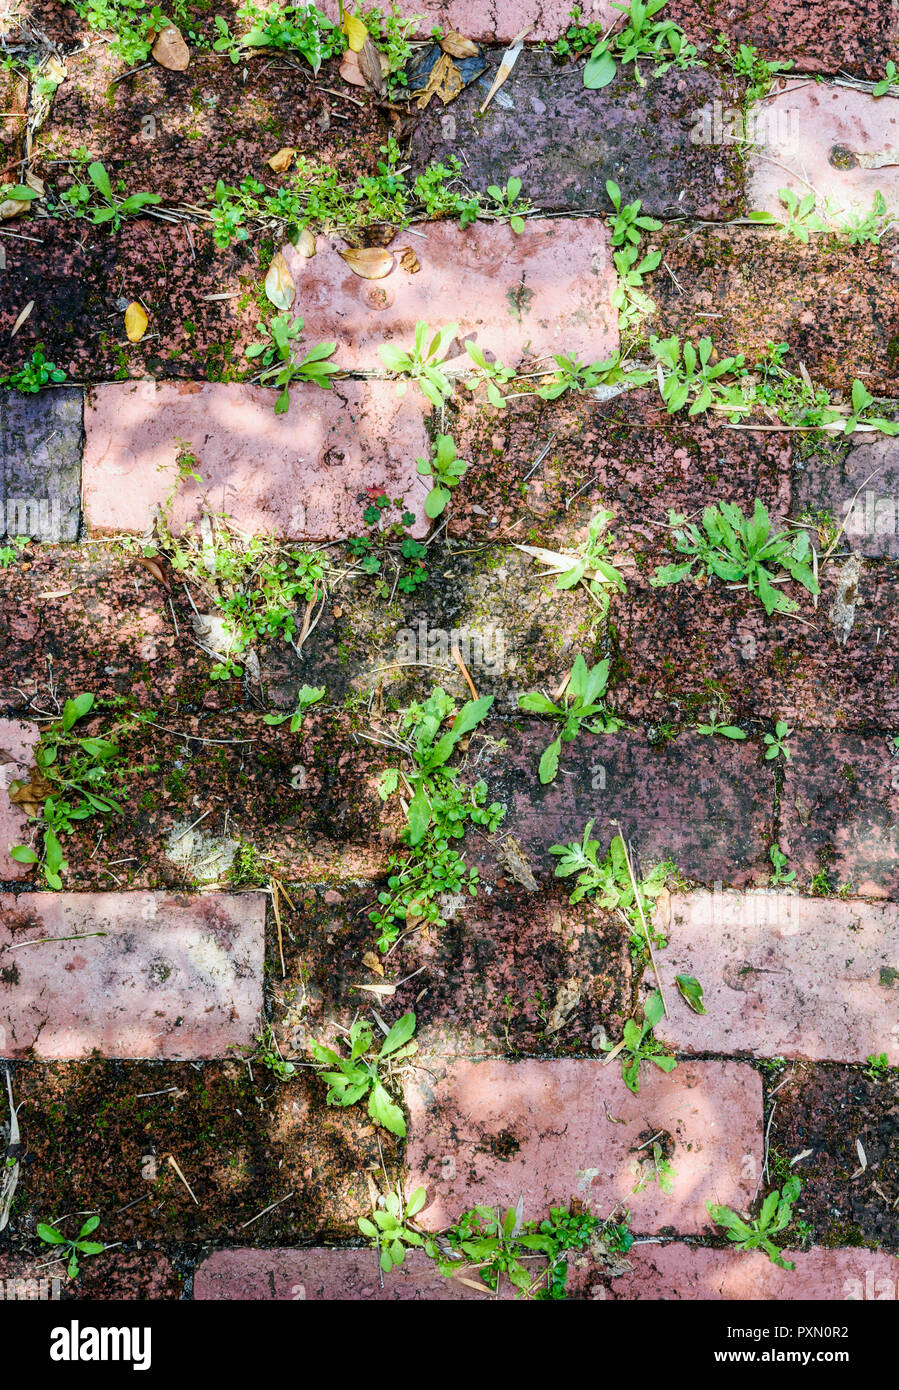 Weeds growing between bricks Stock Photo